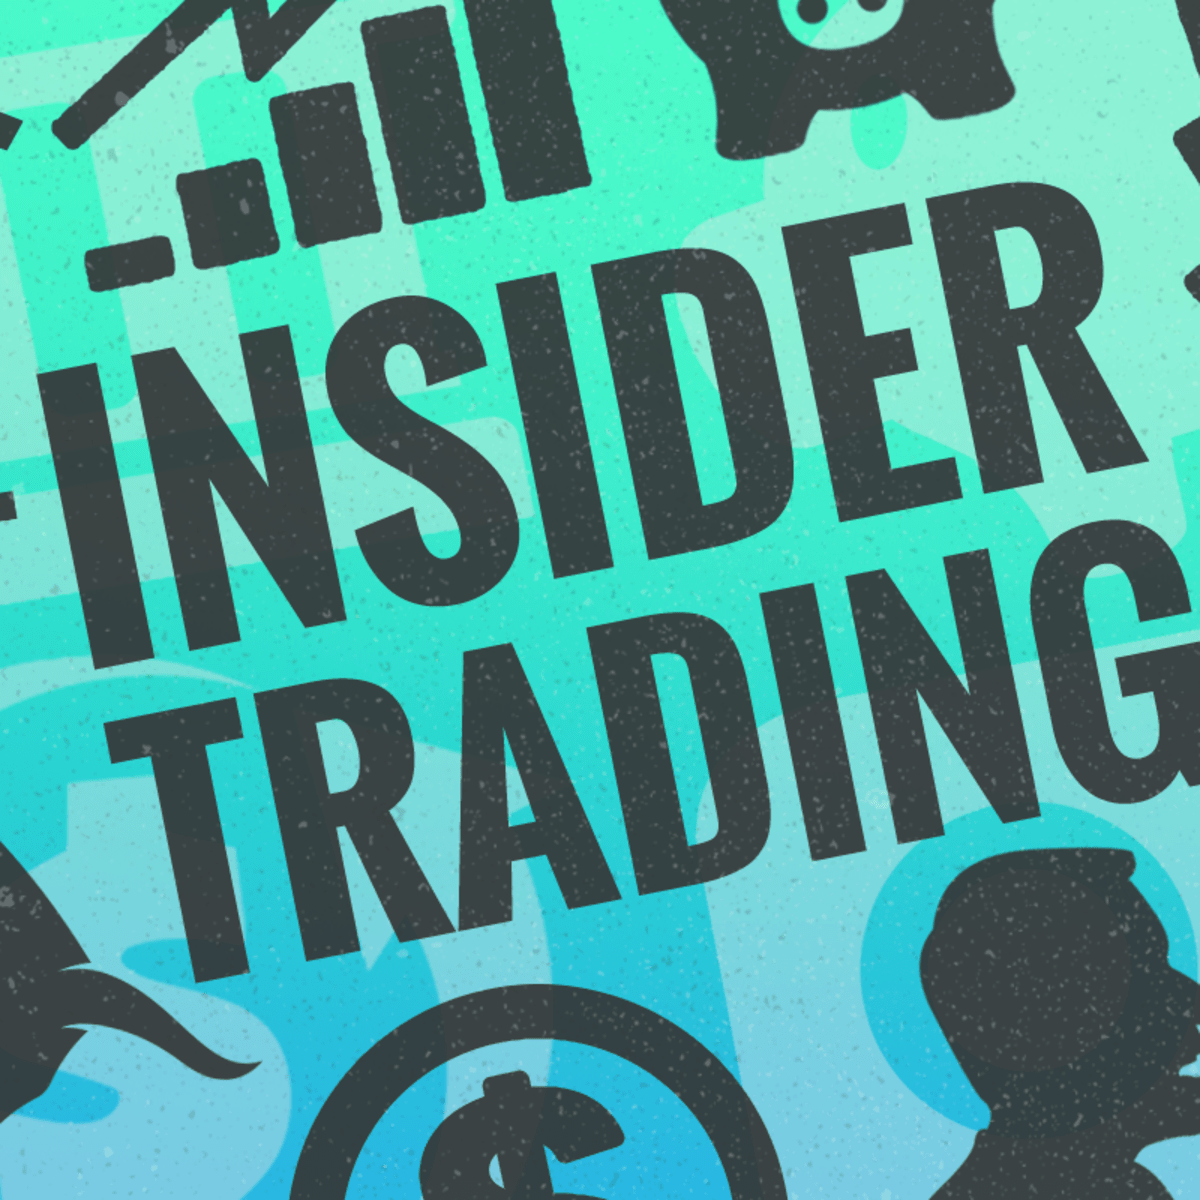 Инсайдер расследования. Инсайдерская торговля. Инсайдерская торговля картинки. Insider trading. Инсайдерская информация картинки.